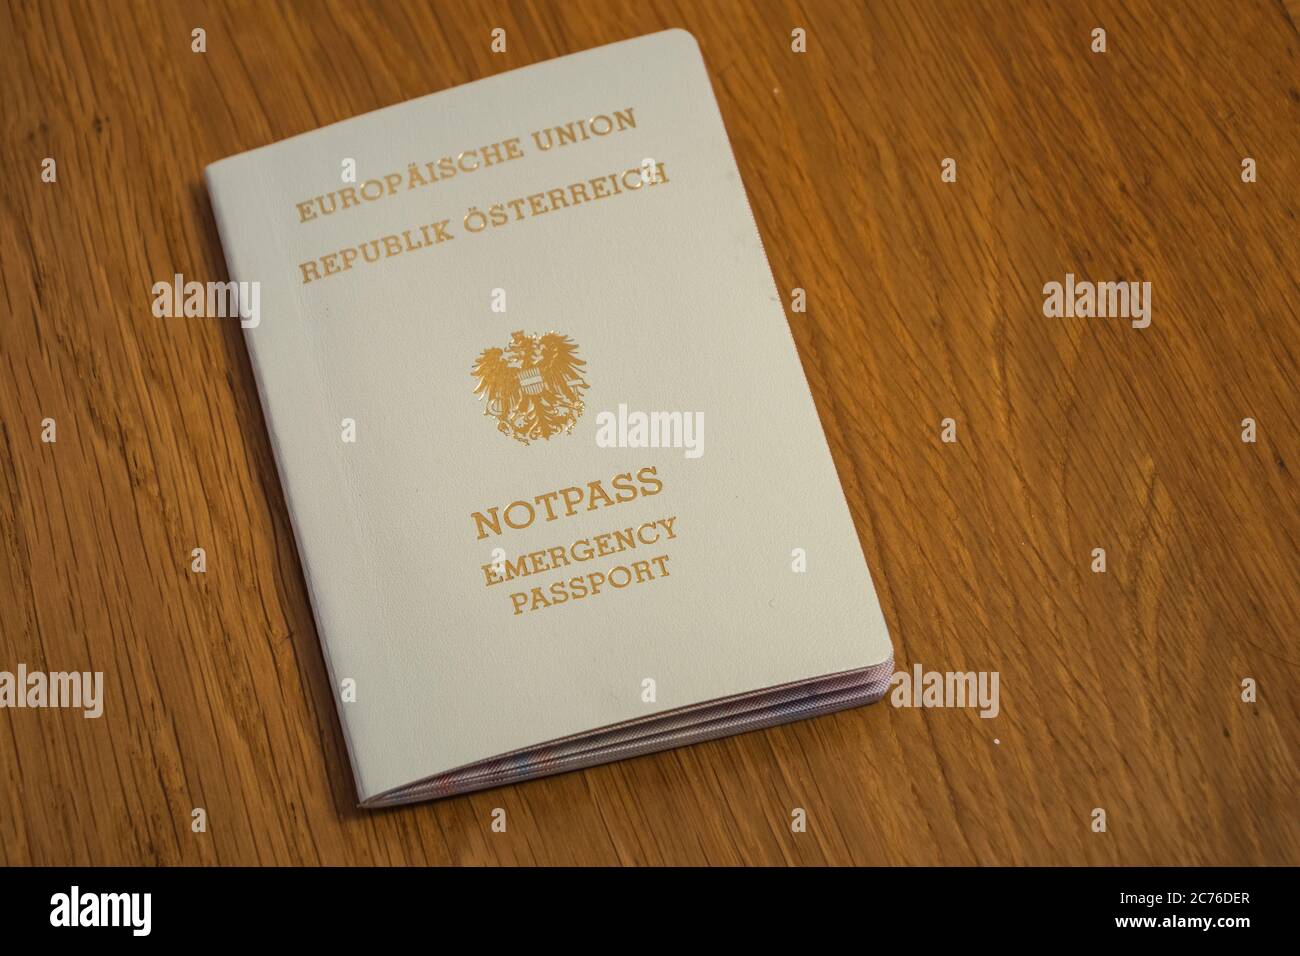 Passaporto europeo di emergenza della Repubblica d'Austria - documento di viaggio color crema dell'UE o dell'Unione europea Foto Stock